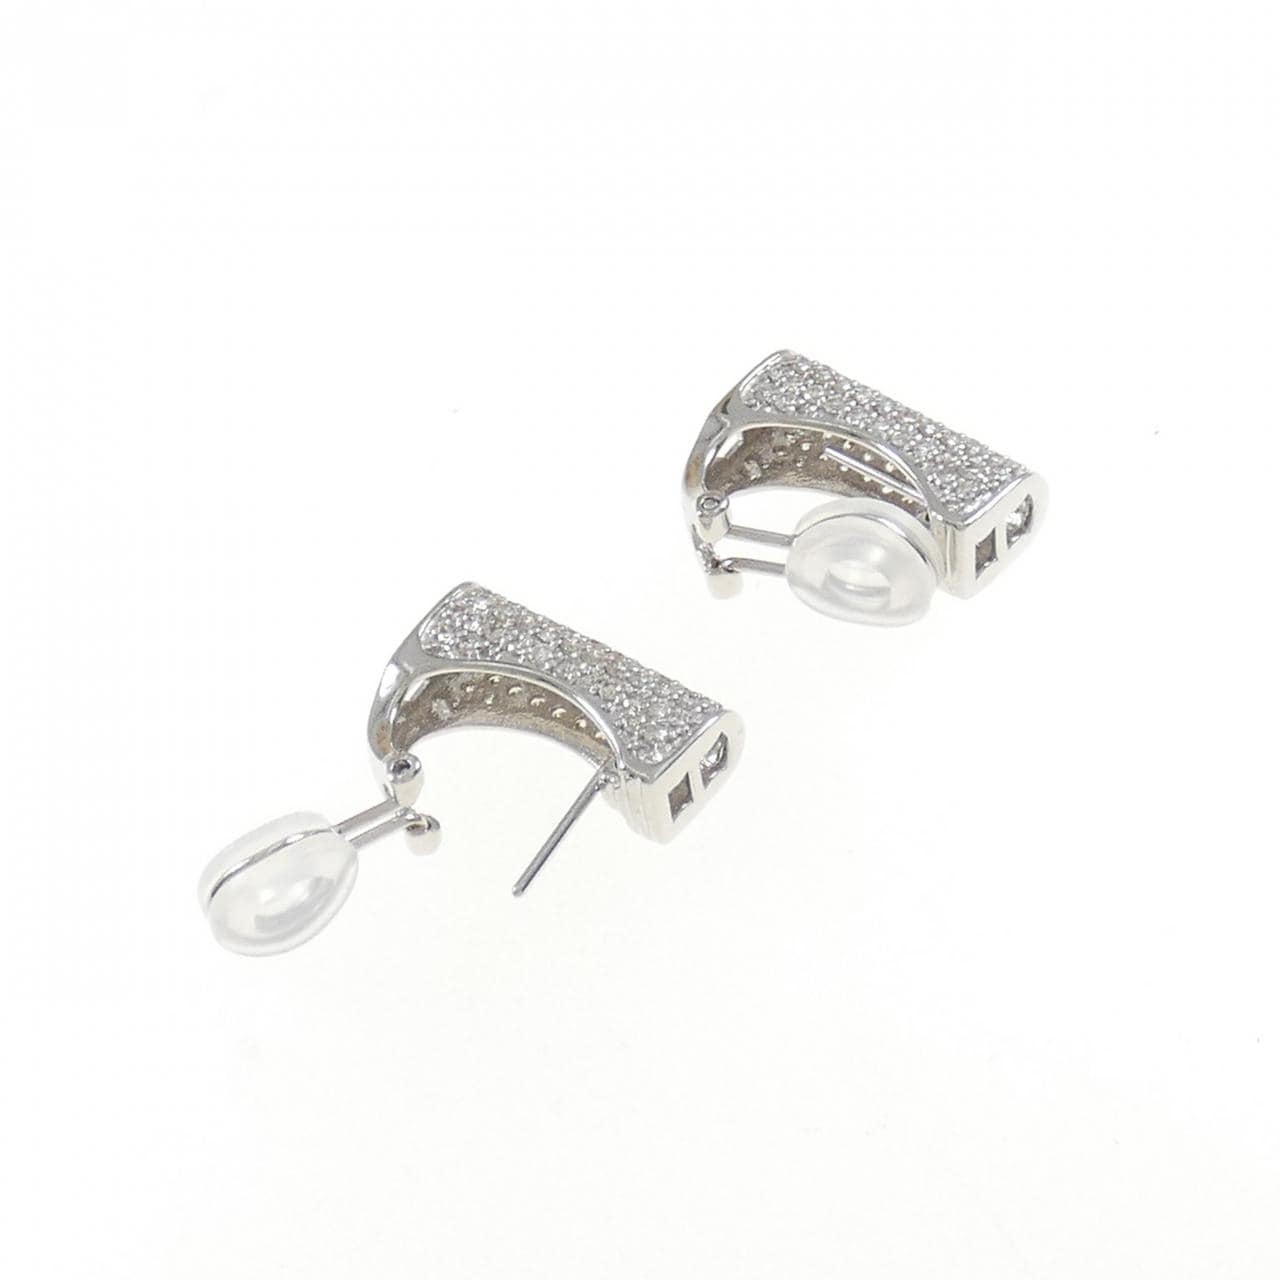 K18WG pave Diamond earrings 2.00CT